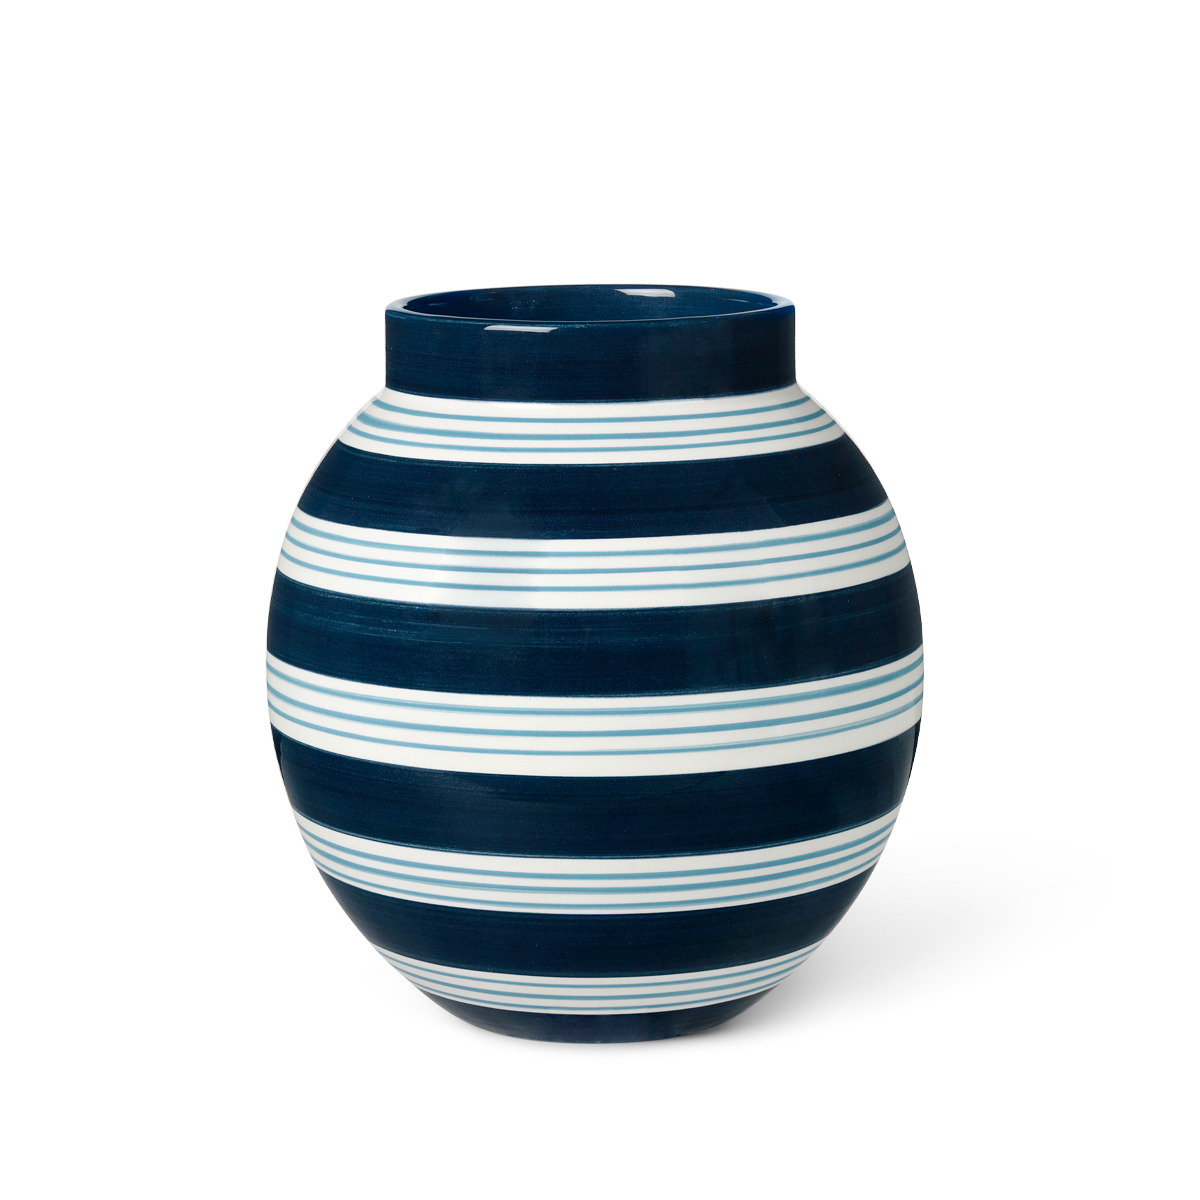 Billede af Kähler - Omaggio Nuovo Vase 20,5 cm, mørk blå